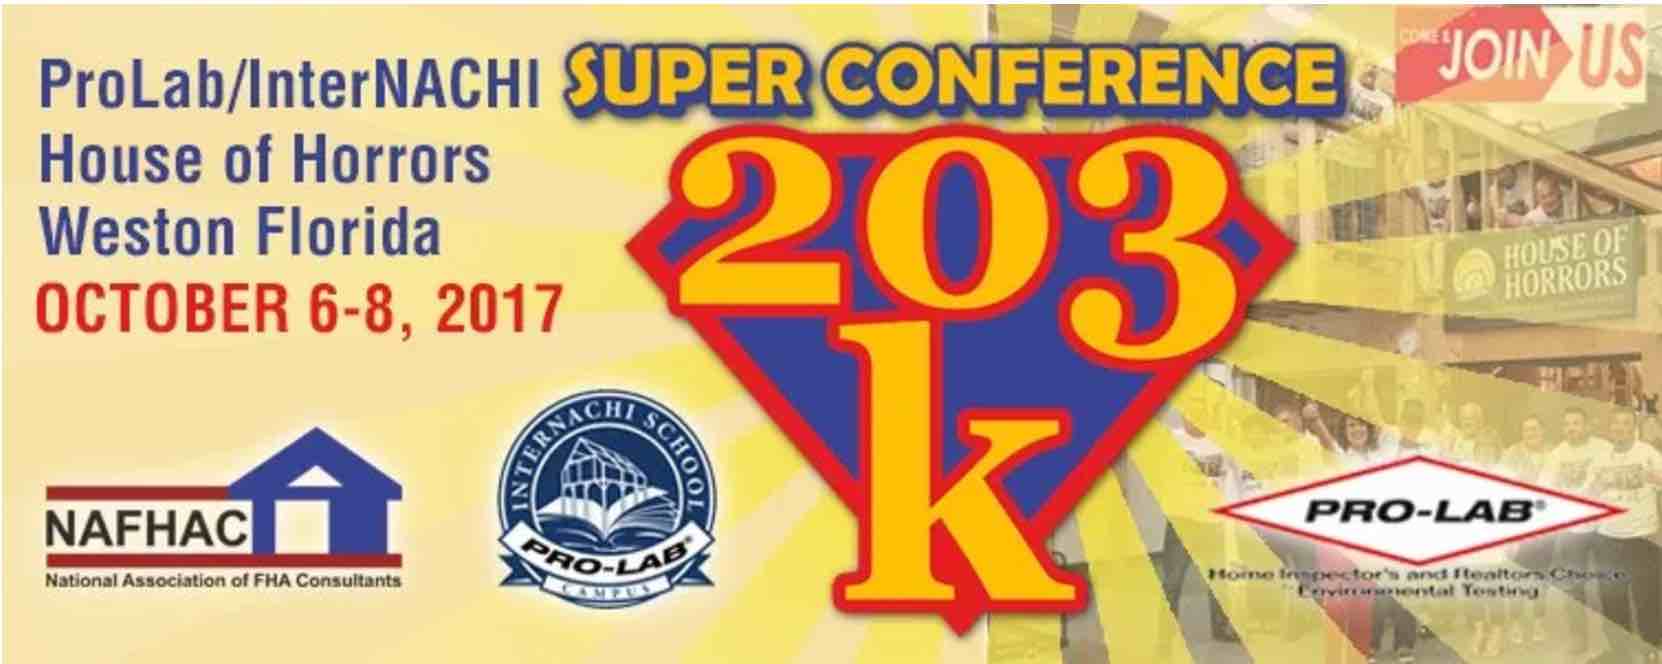 203k Super Conference in Florida